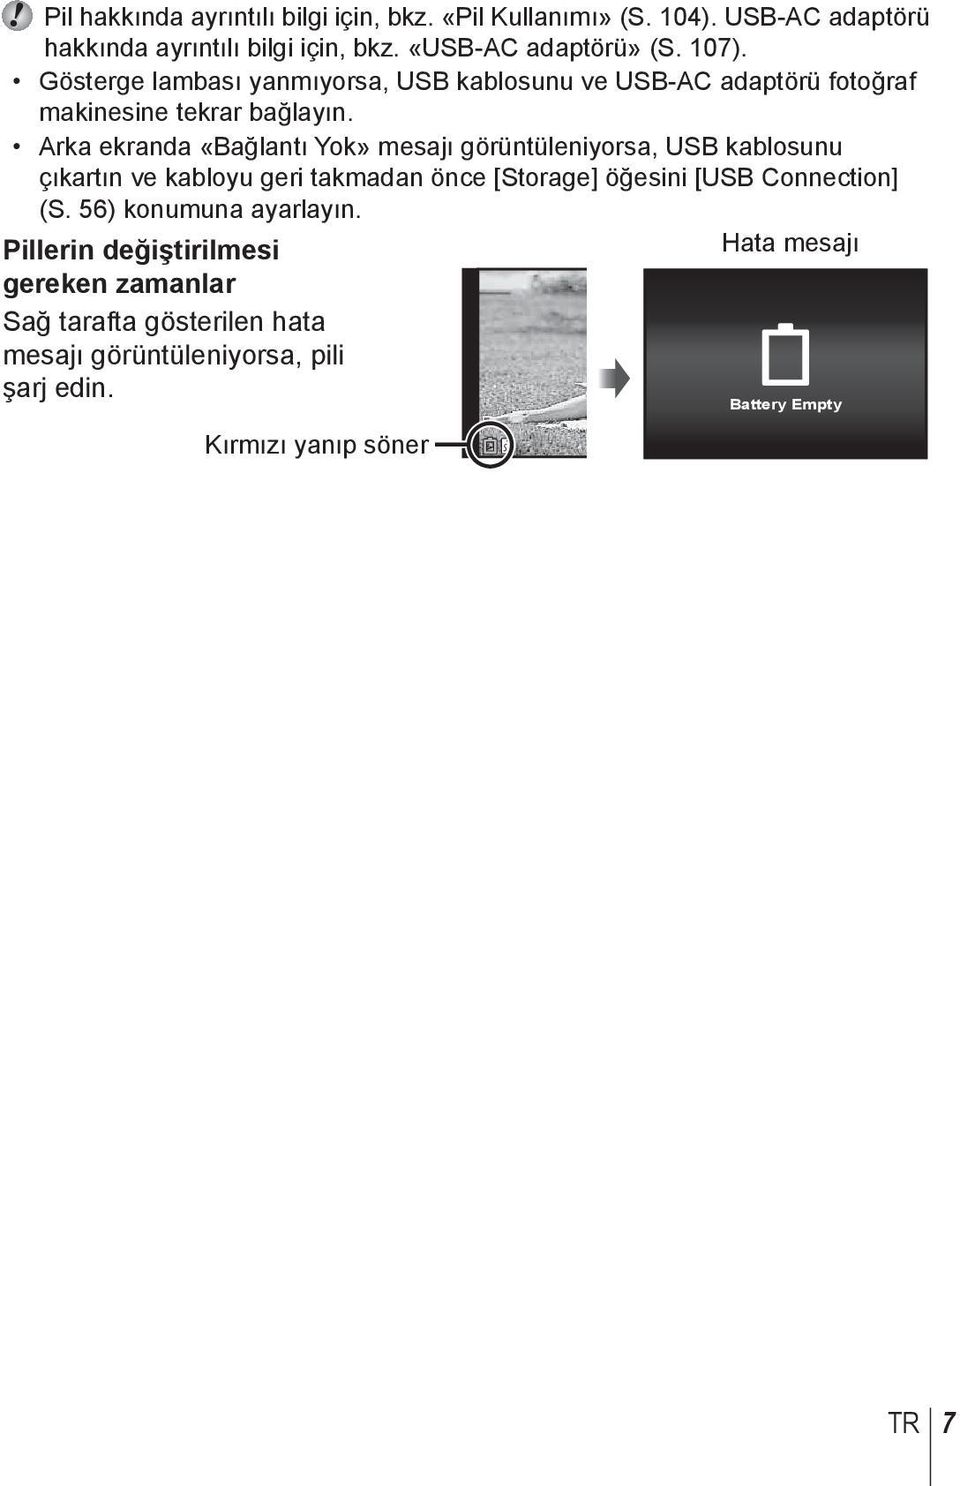 Arka ekranda «Bağlantı Yok» mesajı görüntüleniyorsa, USB kablosunu çıkartın ve kabloyu geri takmadan önce [Storage] öğesini [USB Connection] (S.